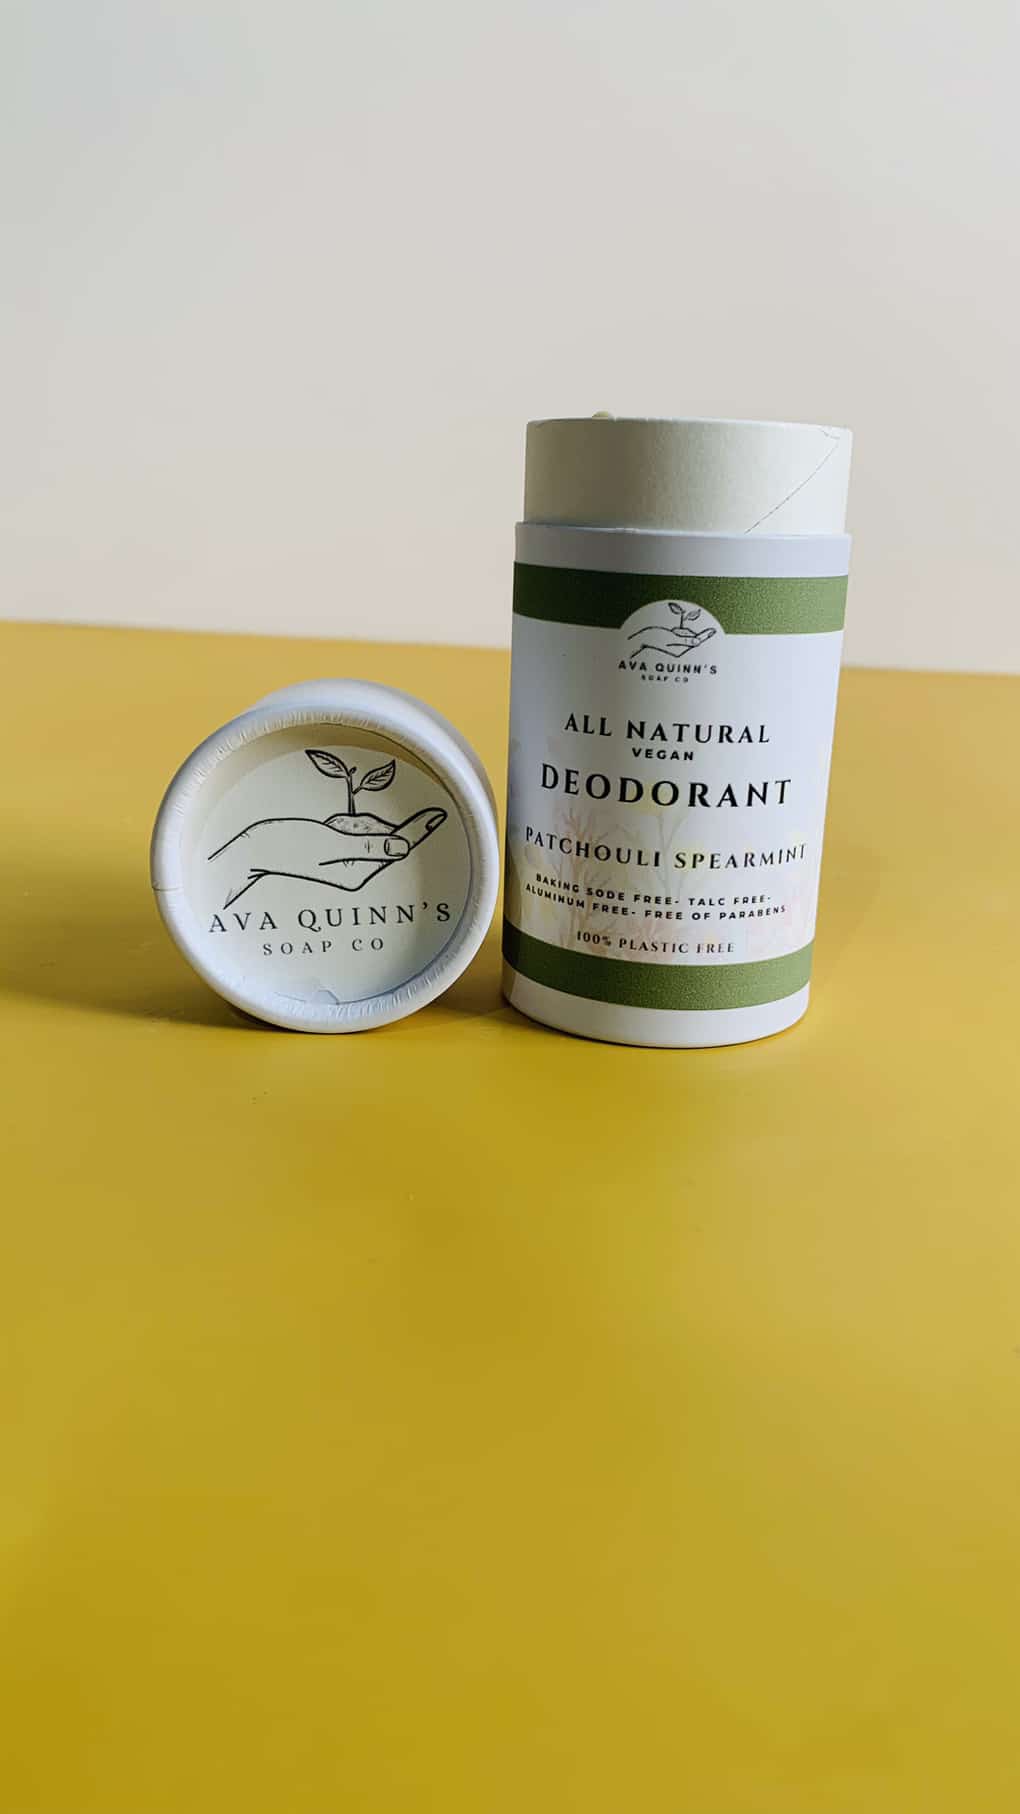 Patchouli Spearmint Natural Deodorant